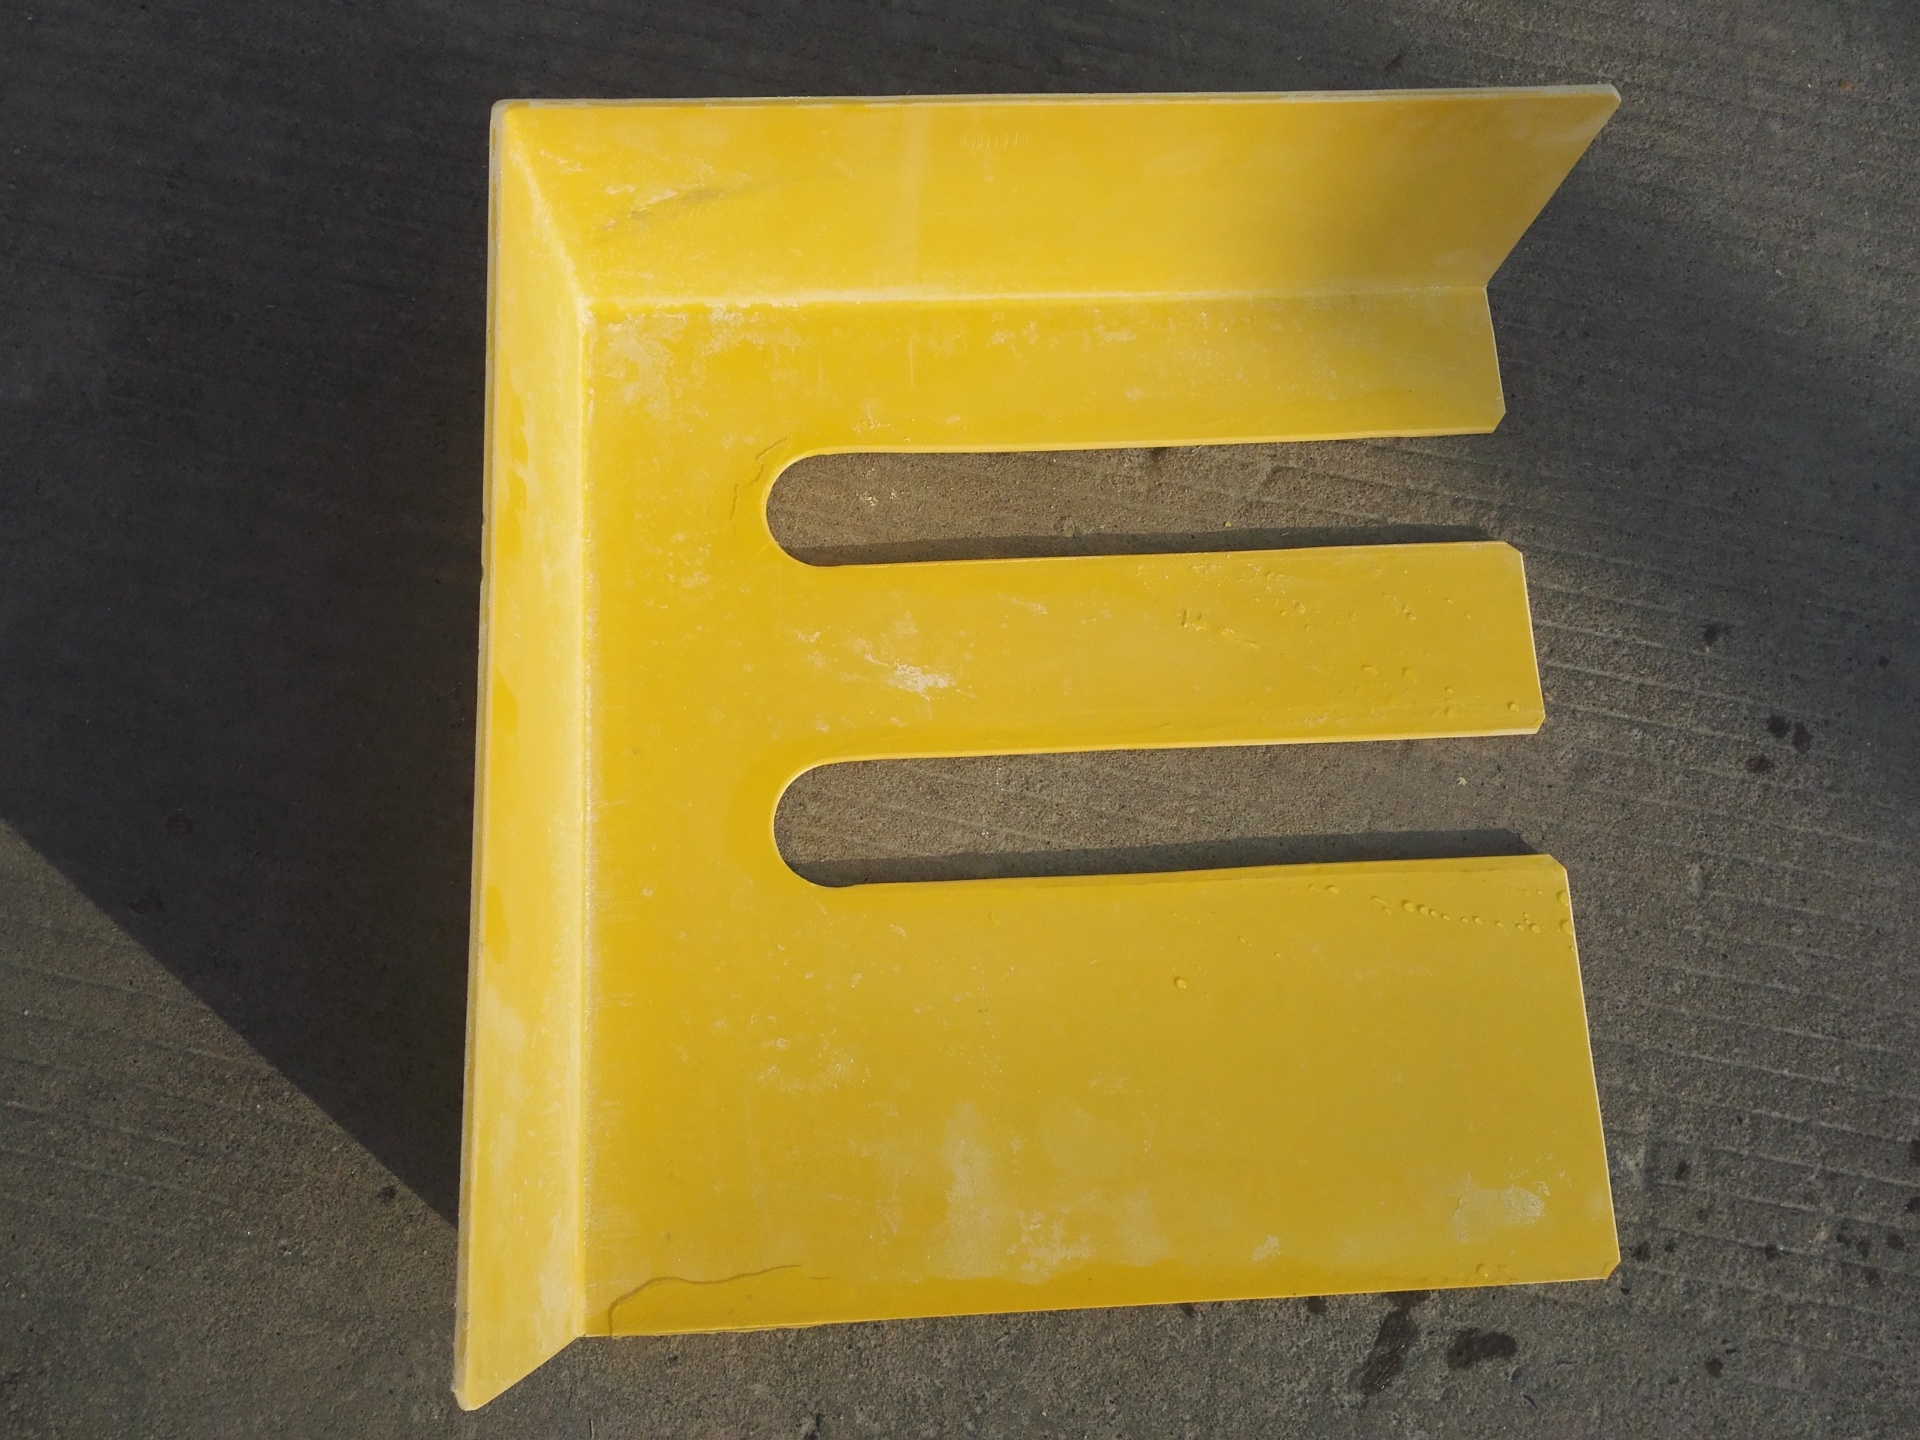 电解槽短路口绝缘插板 耐高温环氧酚醛插板  电解铝绝缘插板 电解铝专用绝缘材料示例图5